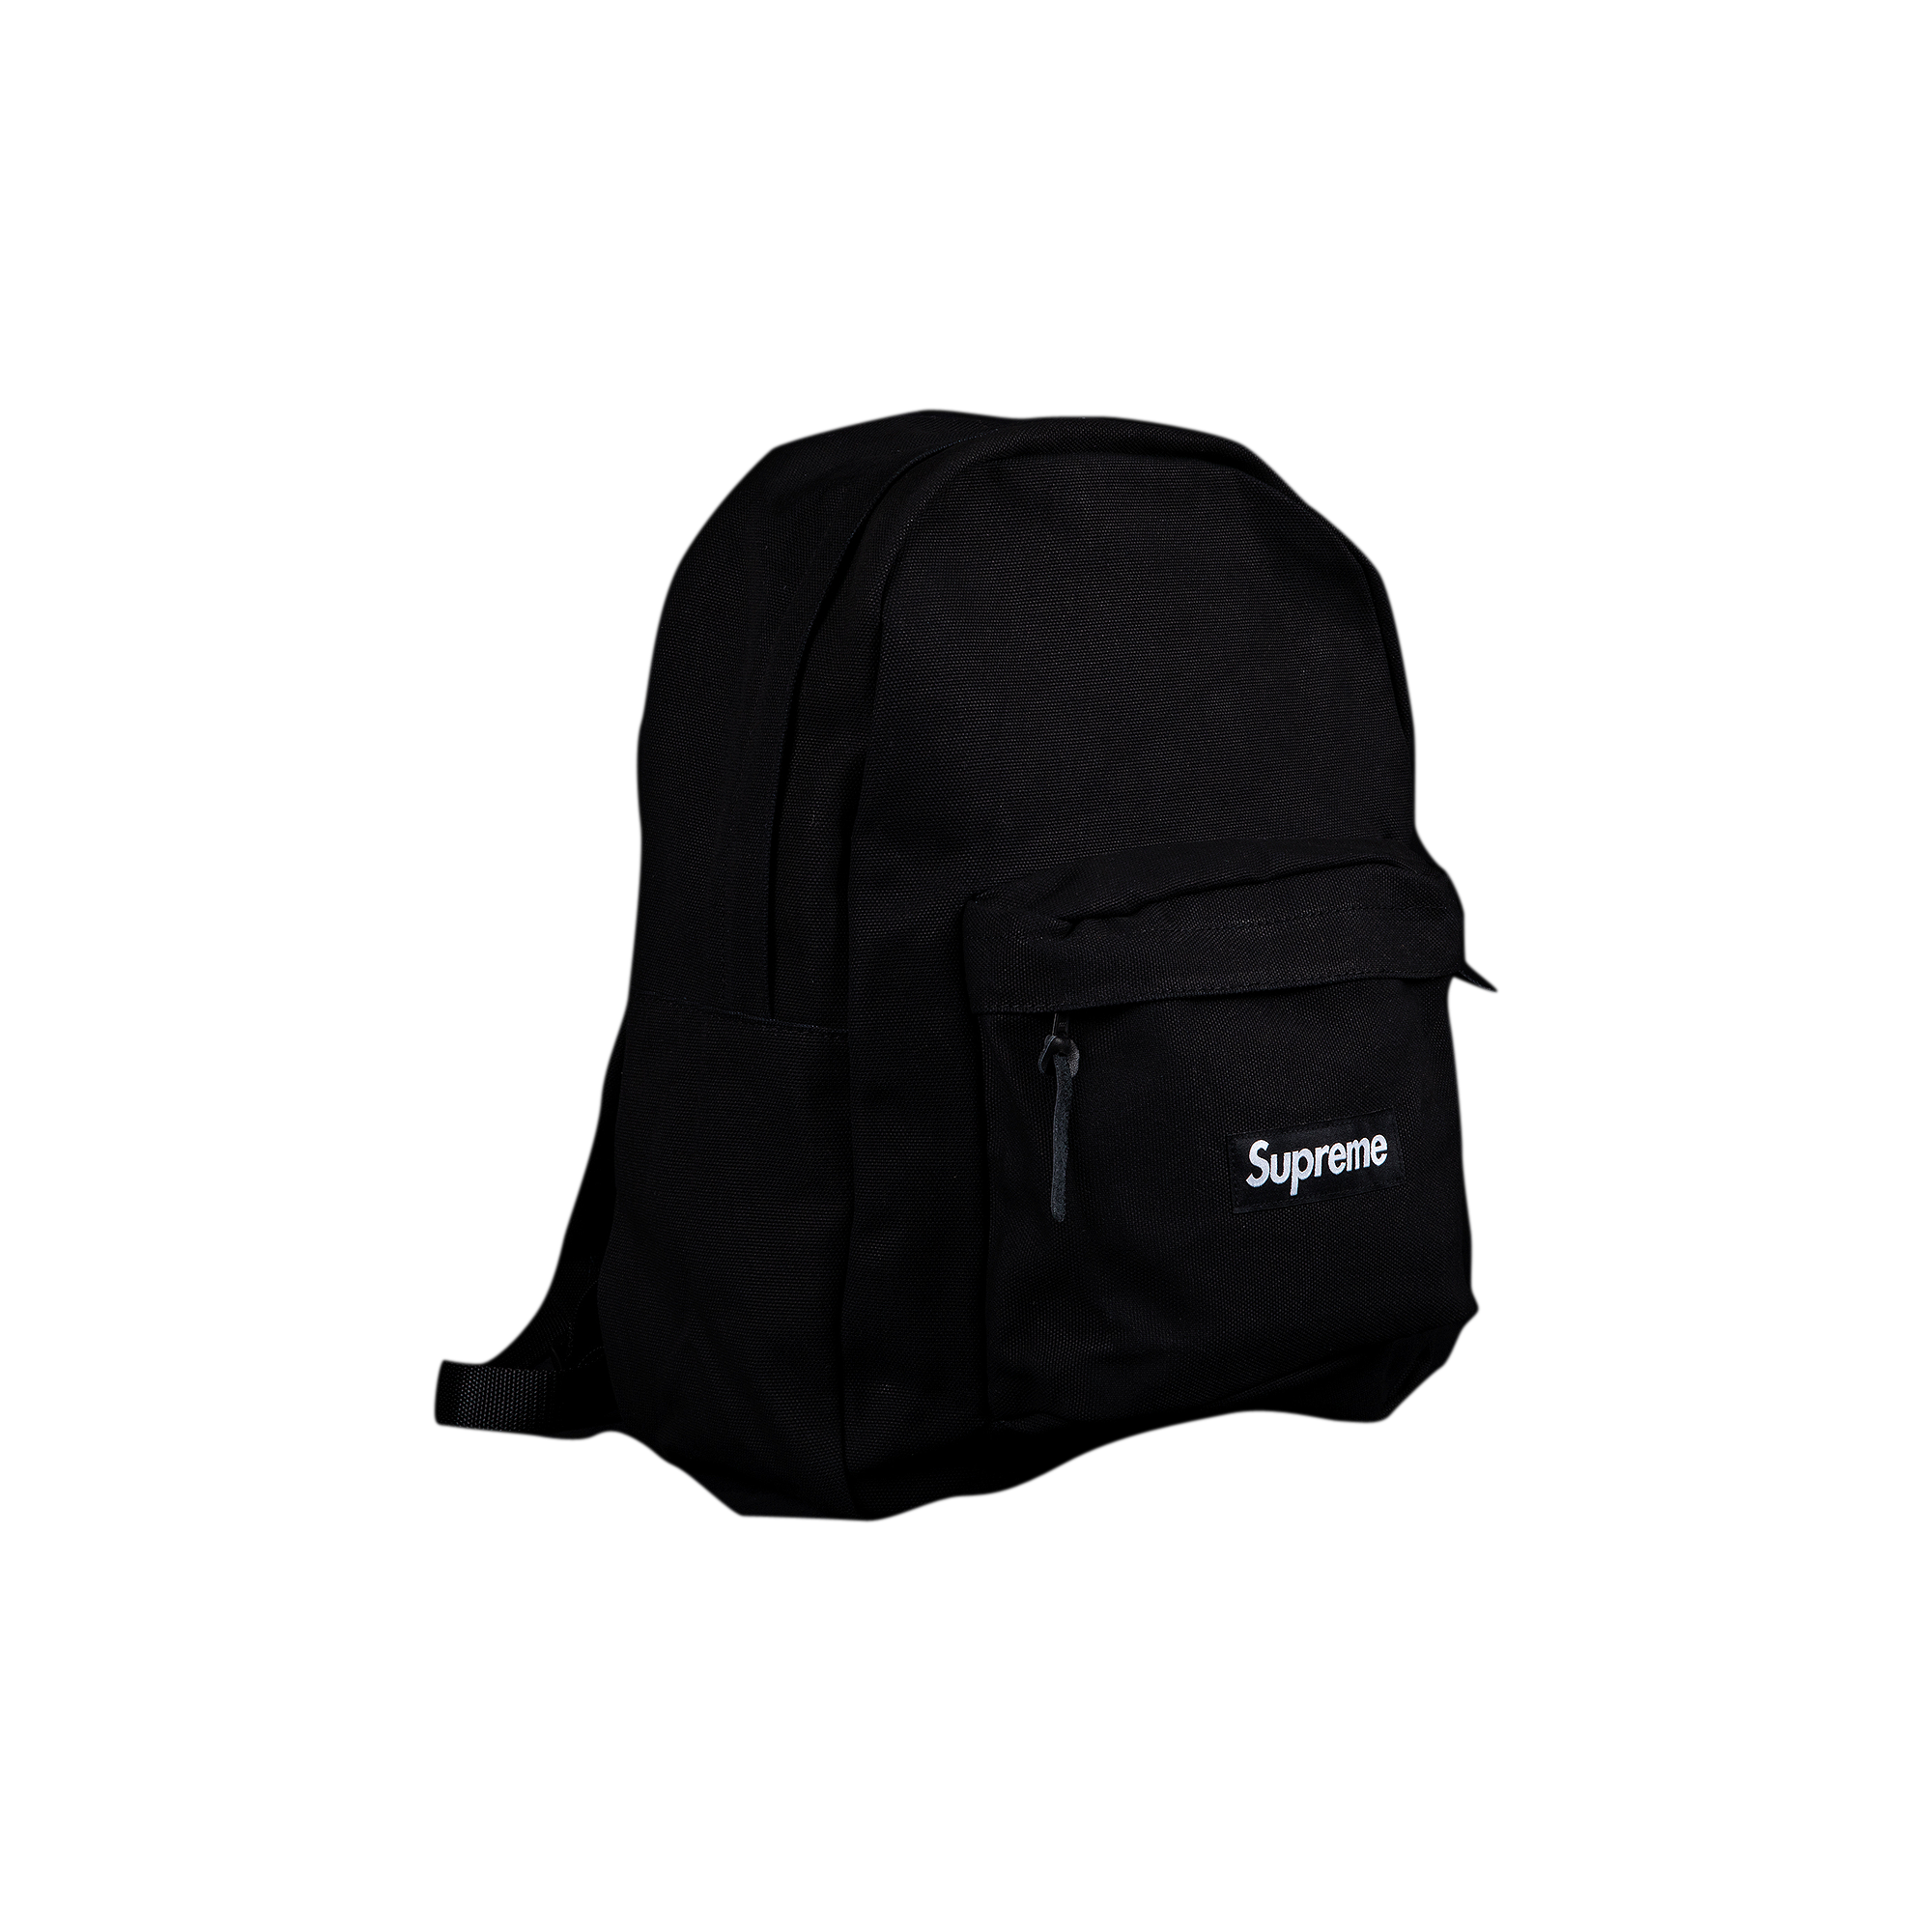 Buy Supreme Canvas Backpack 'Black' - FW20B24 BLACK | GOAT